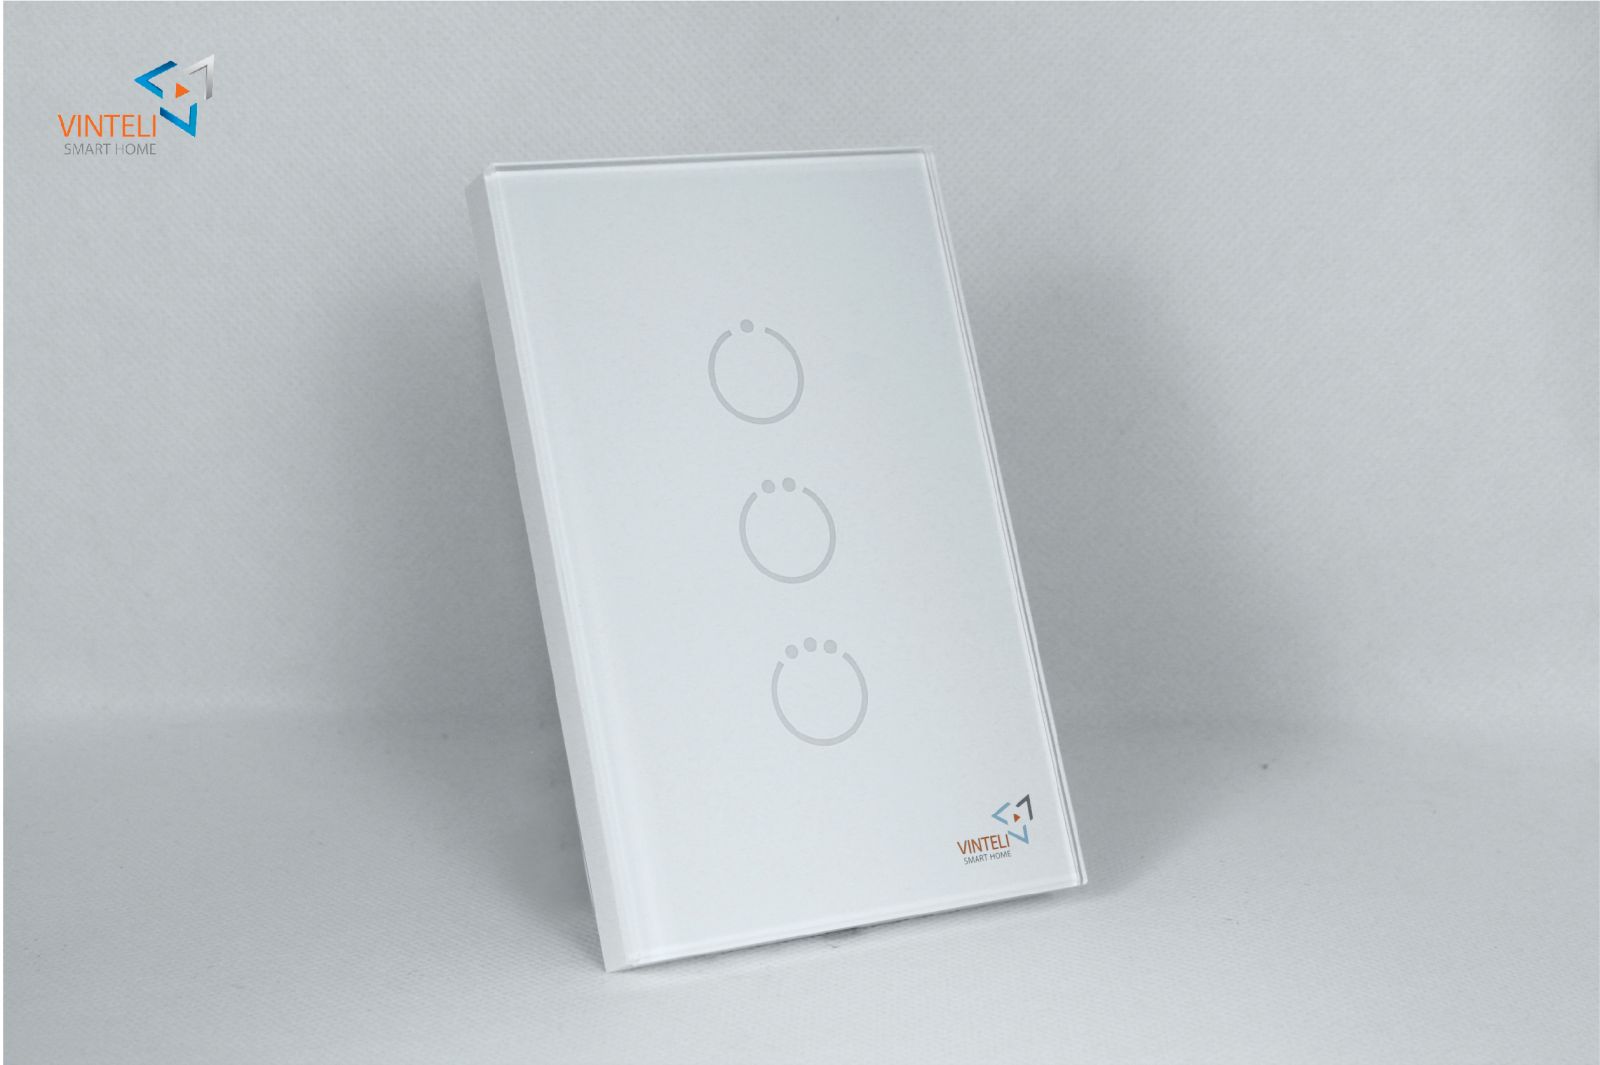 Công tắc cảm ứng Vinteli Smart Home phiên bản 3 nút